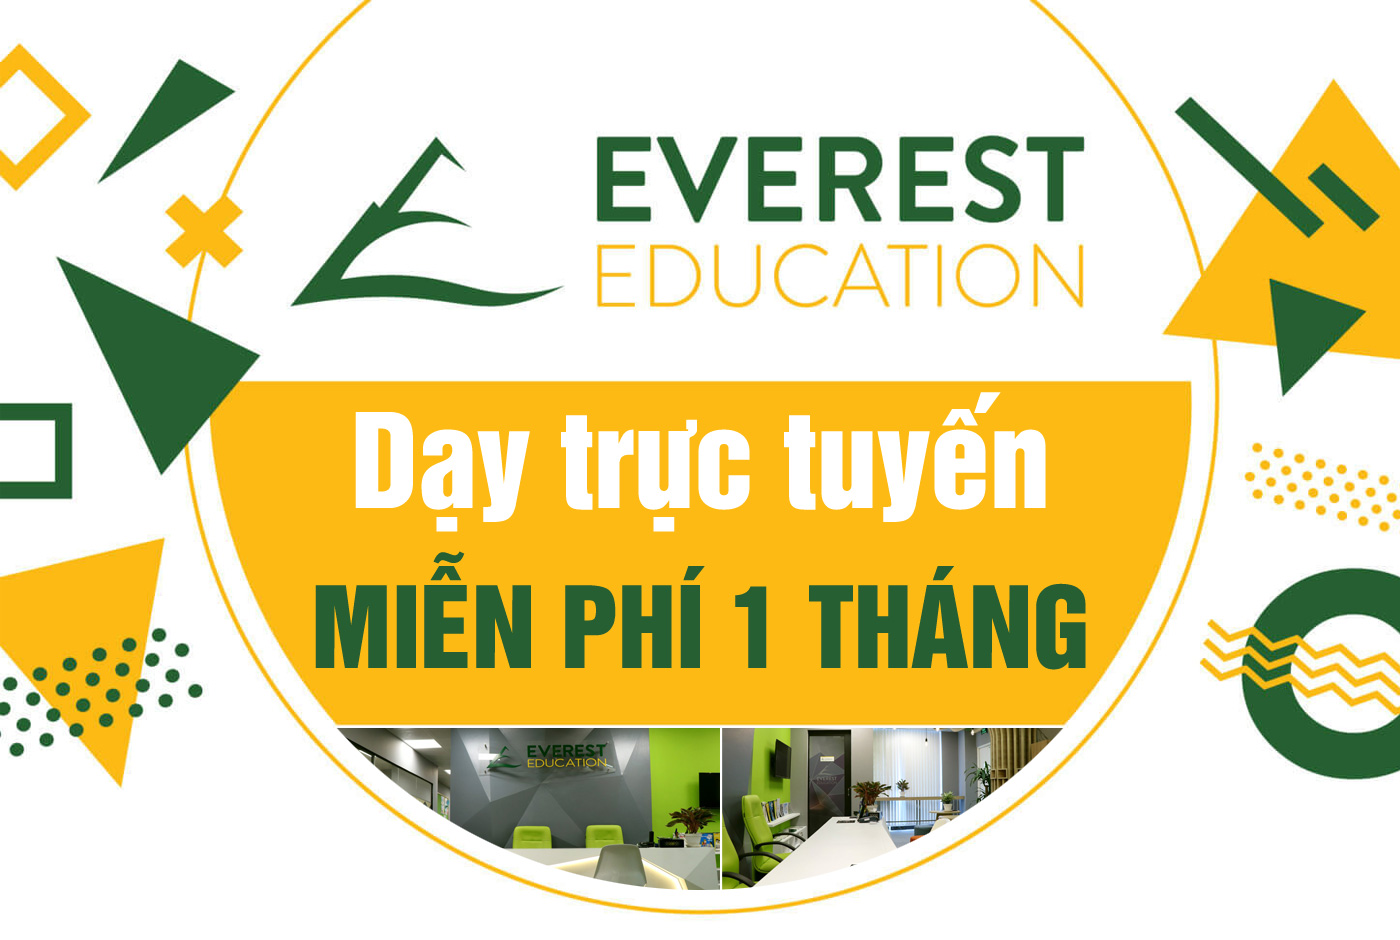 Everest Education dạy trực tuyến miễn phí 1 tháng - Ảnh 1